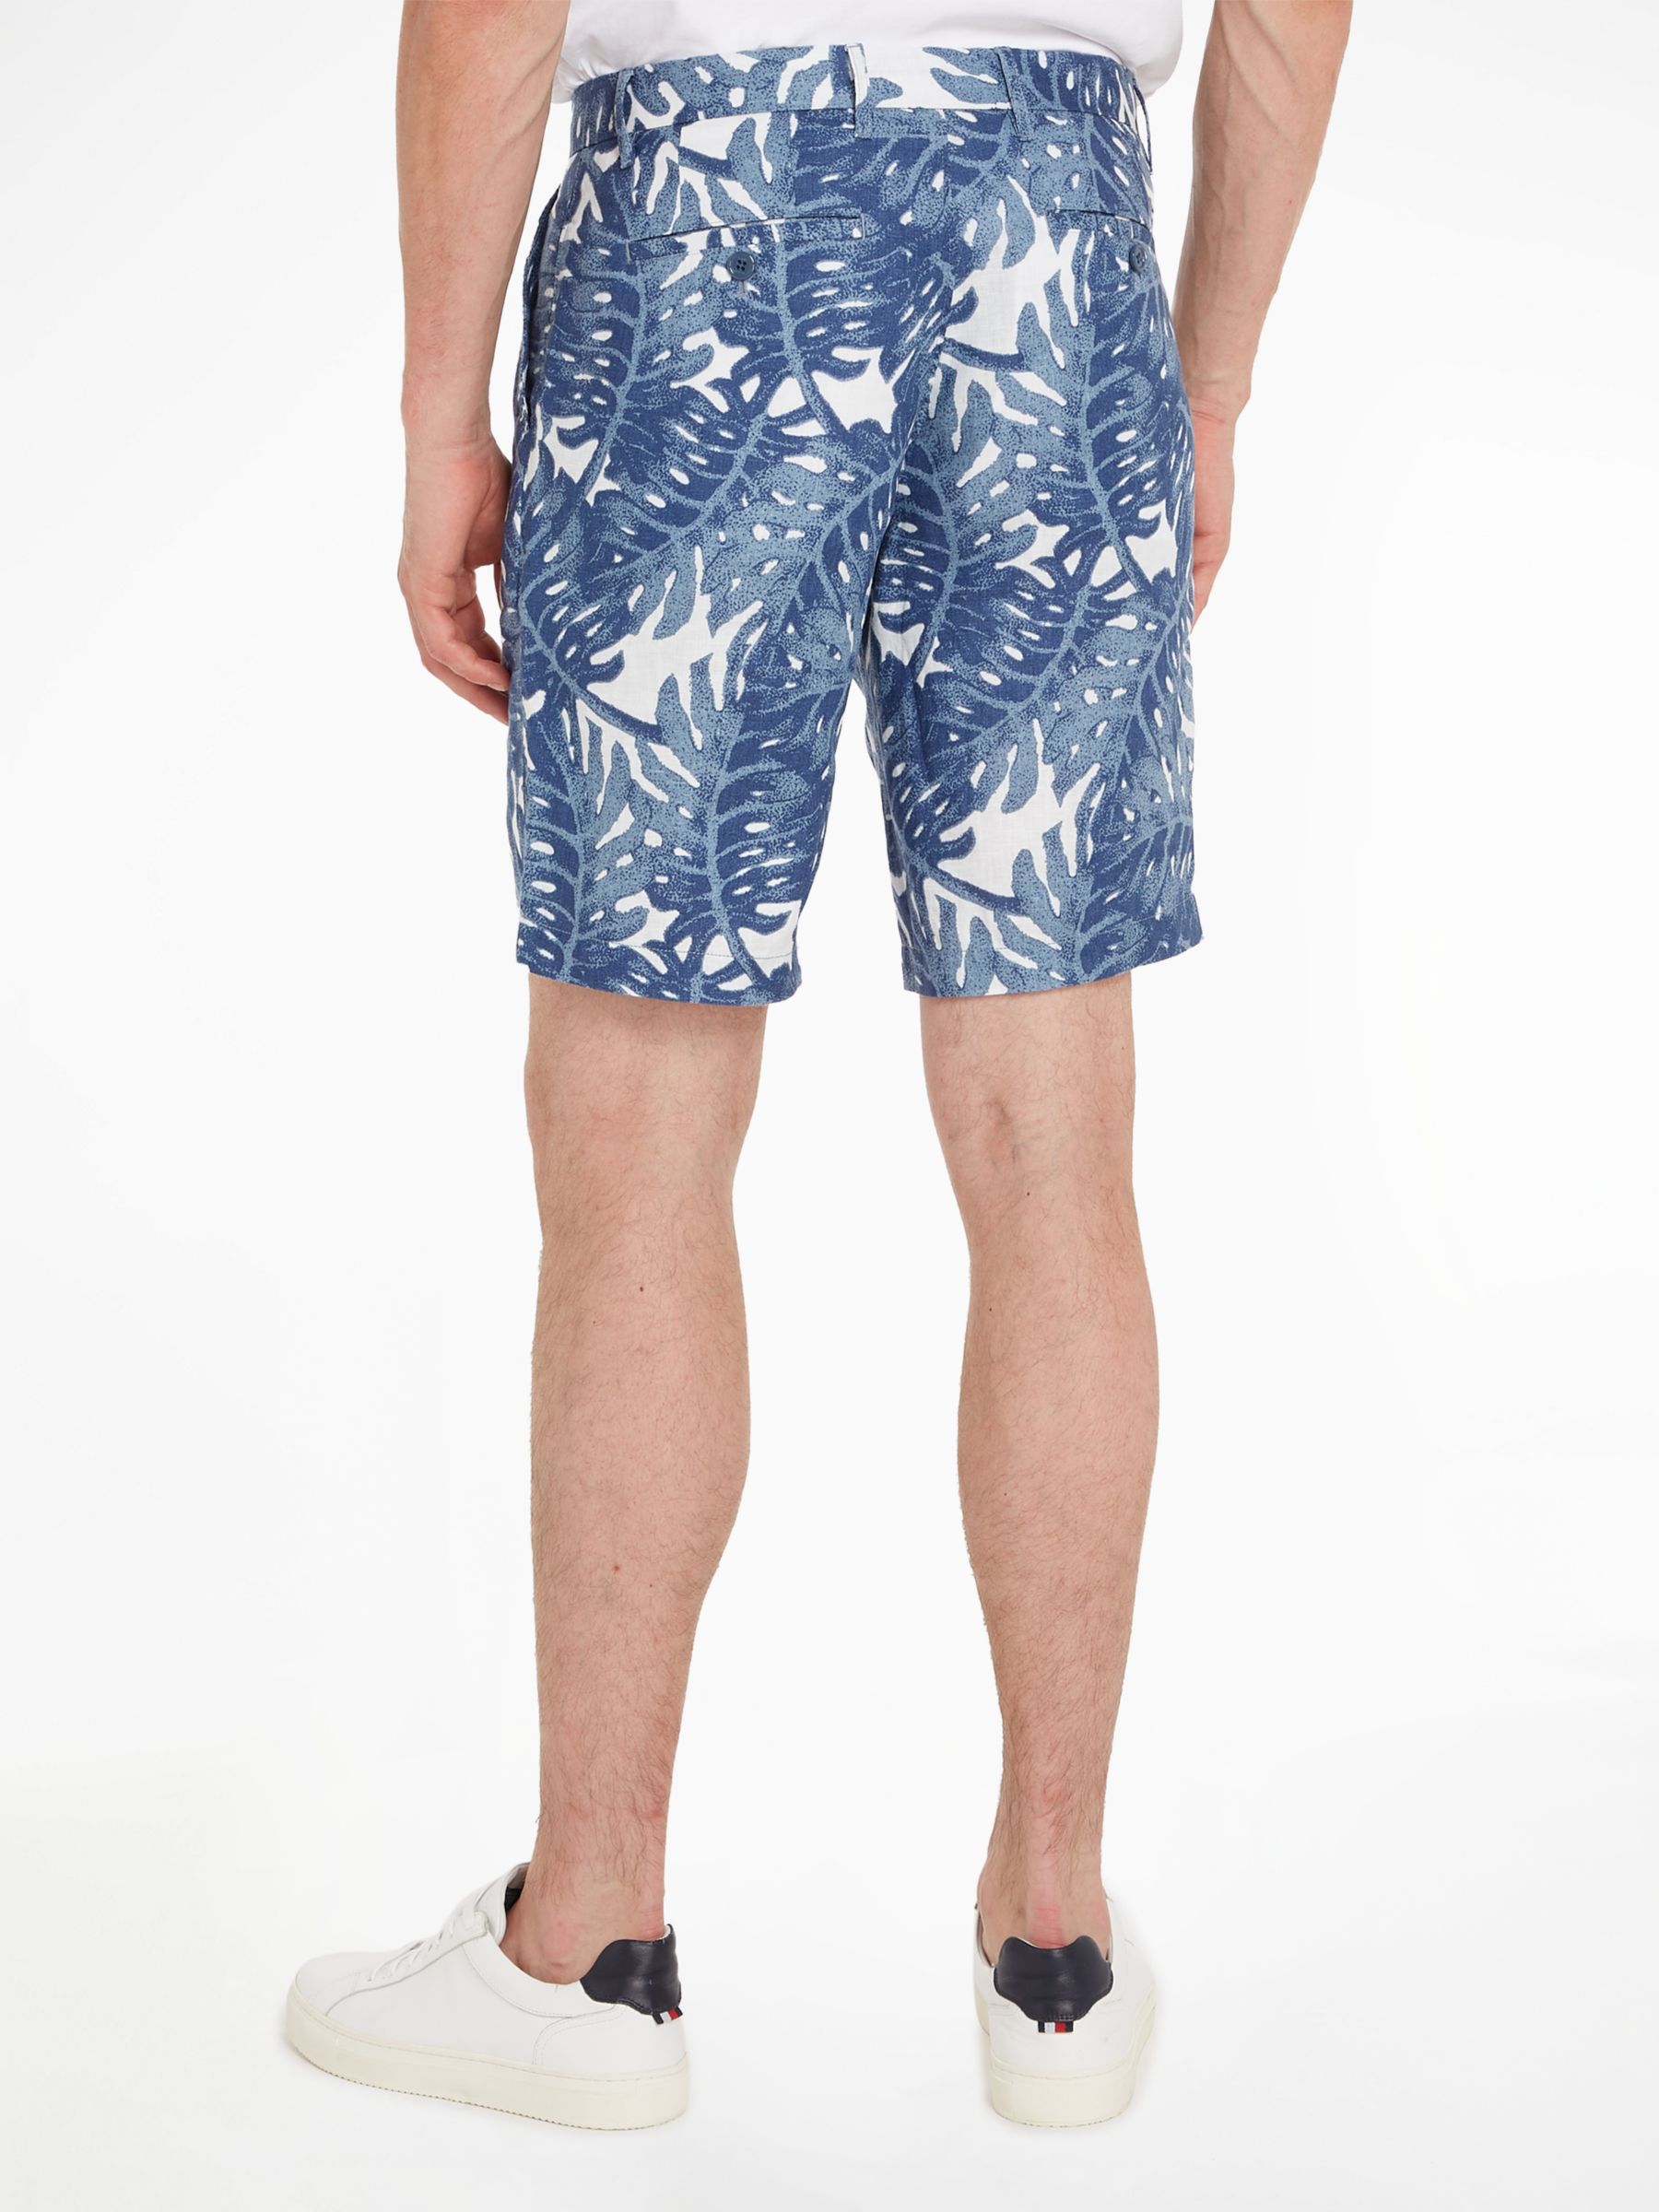 Tommy Hilfiger Harlem Linen Floral Shorts, Blue, 30R